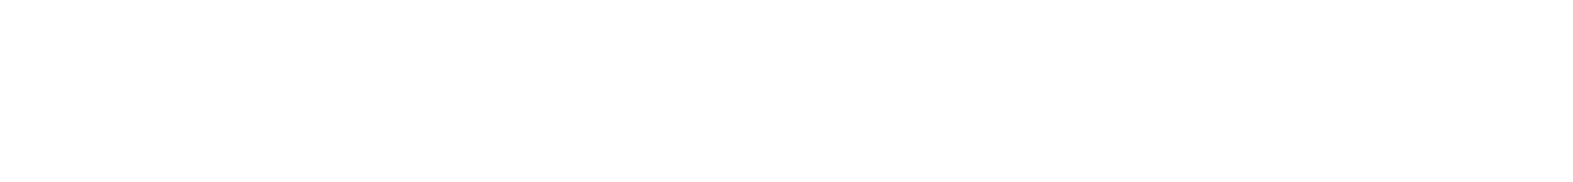 Marimekko logo grand pour les fonds sombres (PNG transparent)